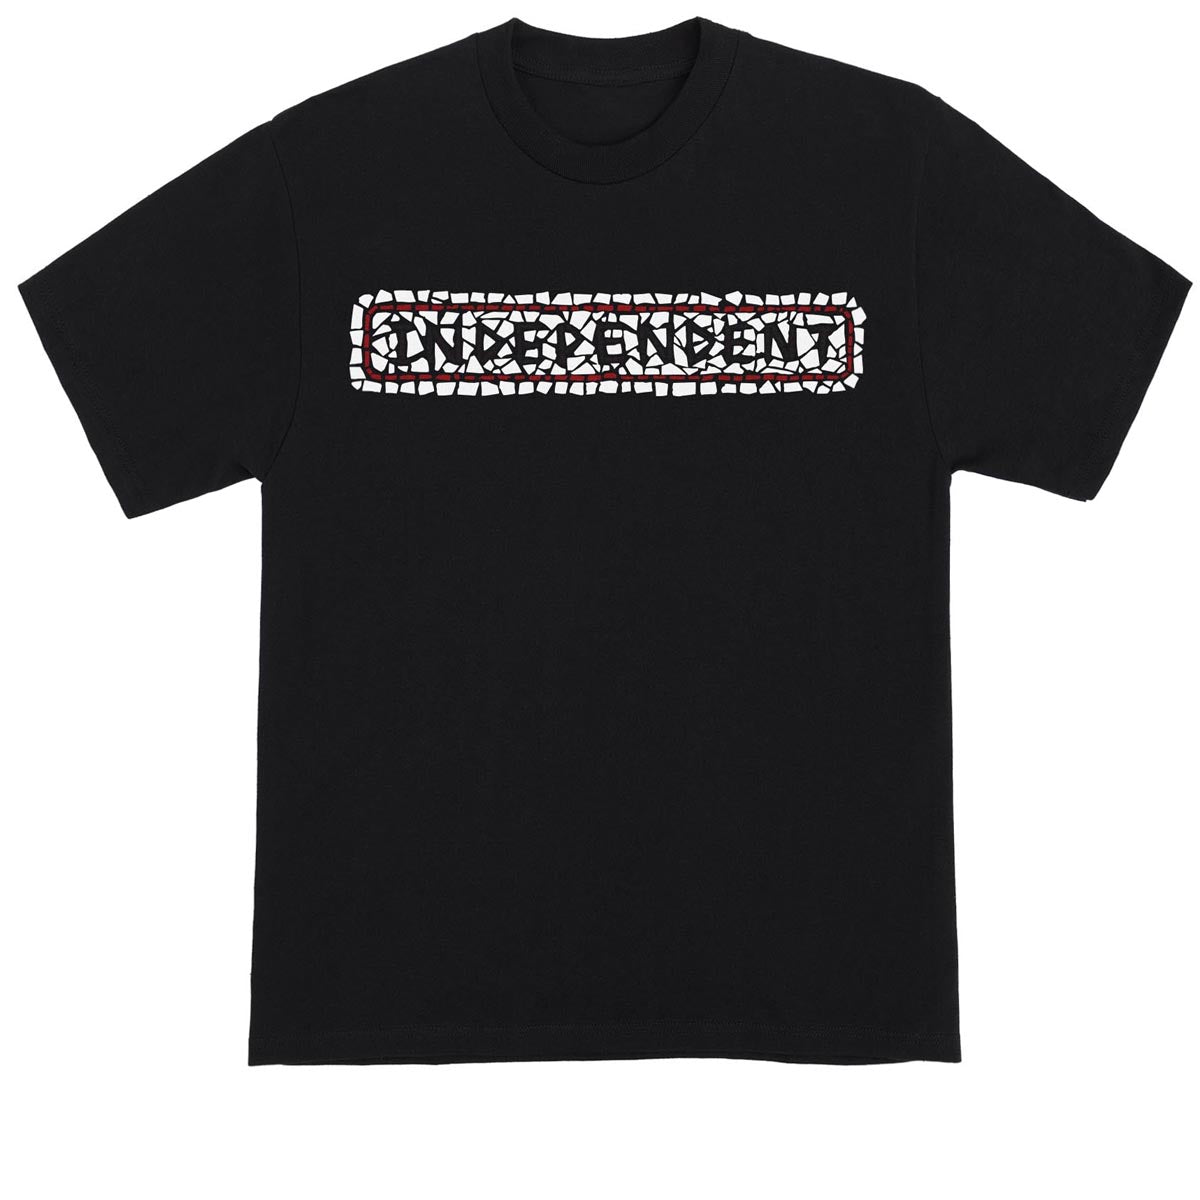 Independent Tile Bar T-Shirt - Black image 1